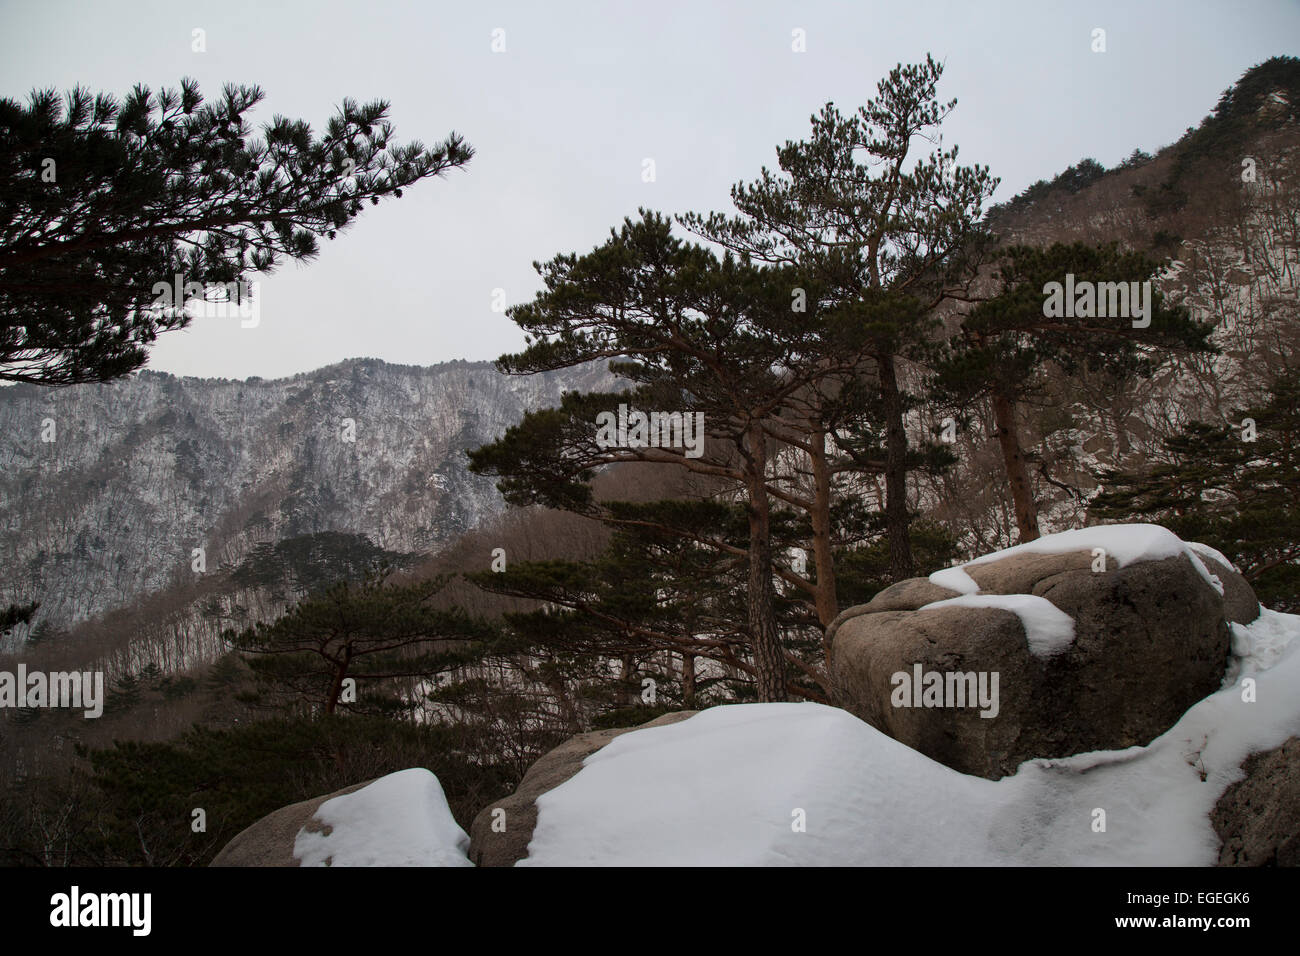 El Parque Nacional de Seoraksan en invierno. Caminando a Roca Ulsanbawi. Sokcho, Corea del Sur. Montañas cubiertas de nieve. Foto de stock